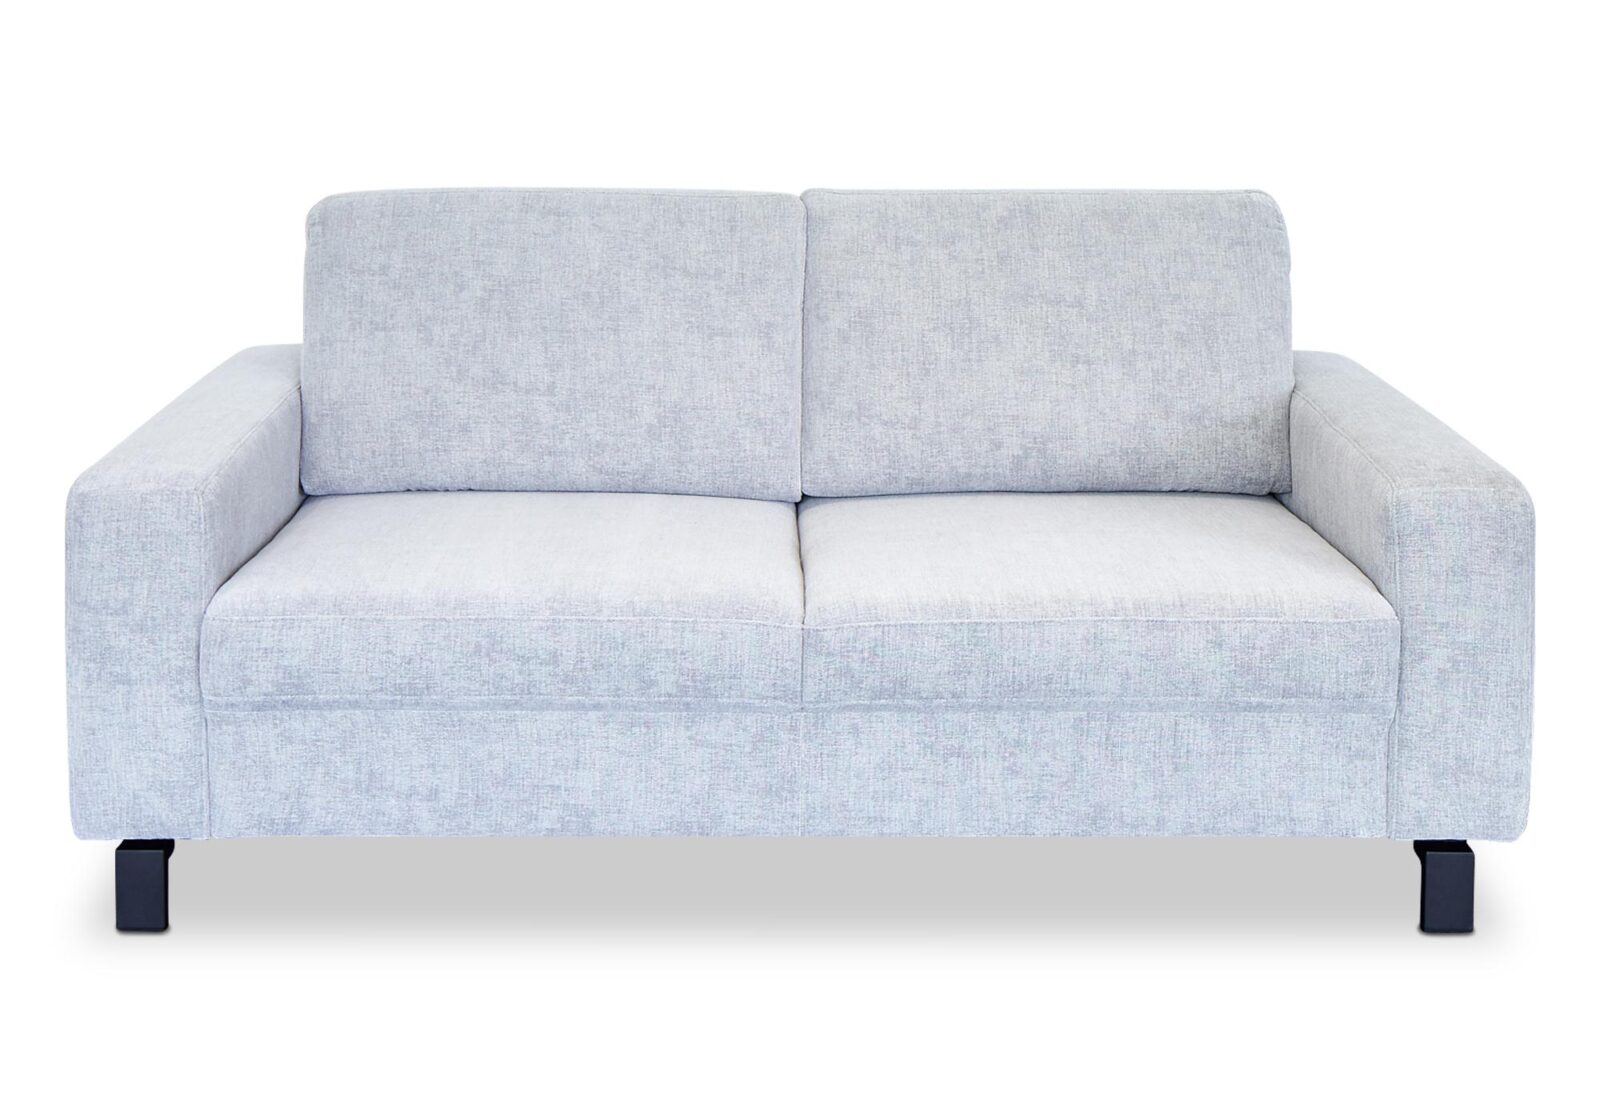 2er Sofa Molly mit Sitztiefenverstellung. Bezug: Stoff. Farbe: Hellgrau. Erhältlich bei Möbel Gallati.